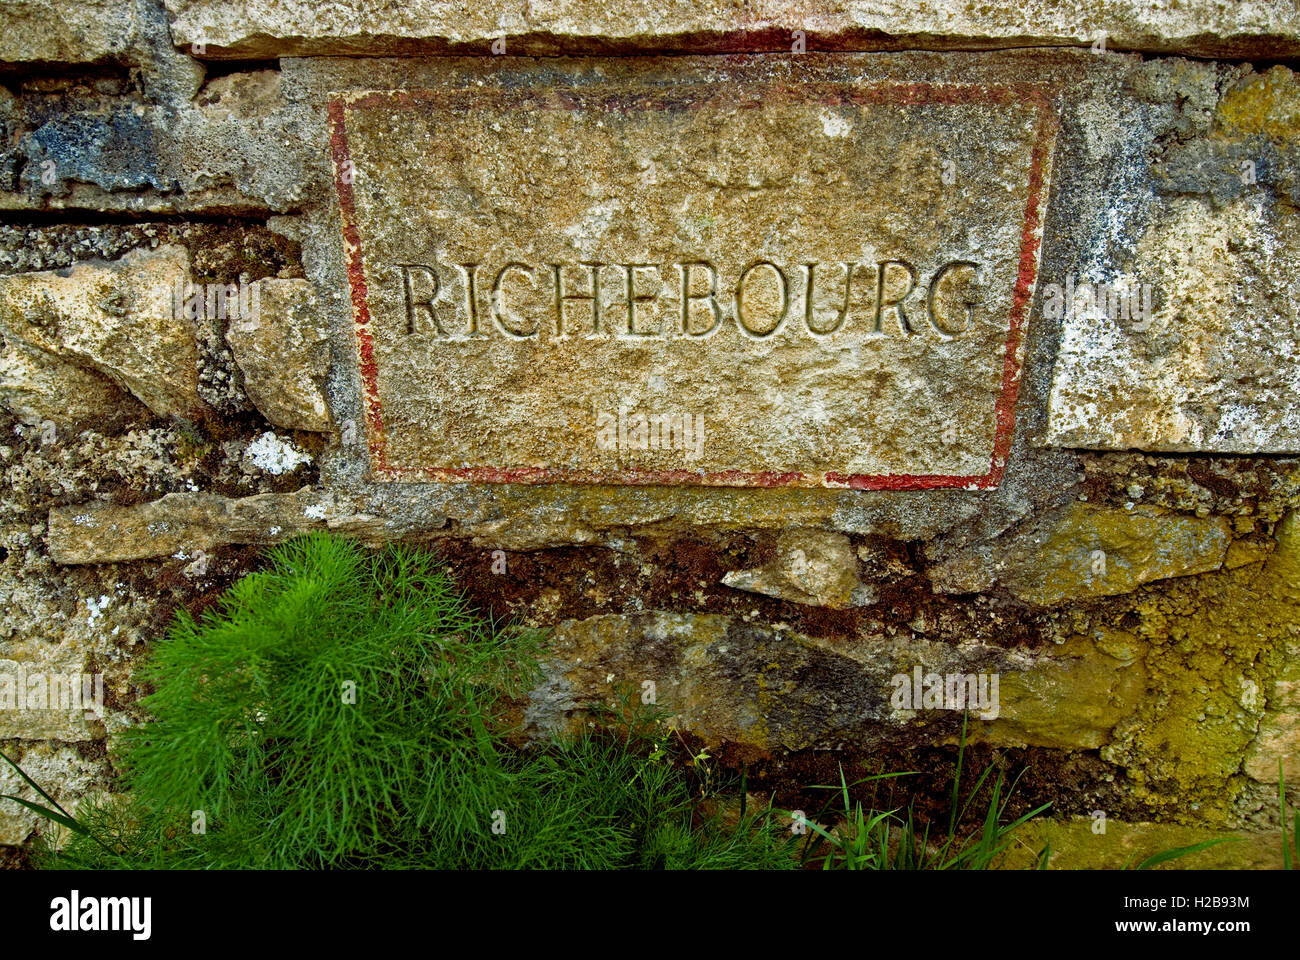 RICHEBOURG VIGNE Nom rustique de plaque en mur de Richebourg vignoble de domaine de la Romanée-conti Richebourg Cote d'Or France Banque D'Images